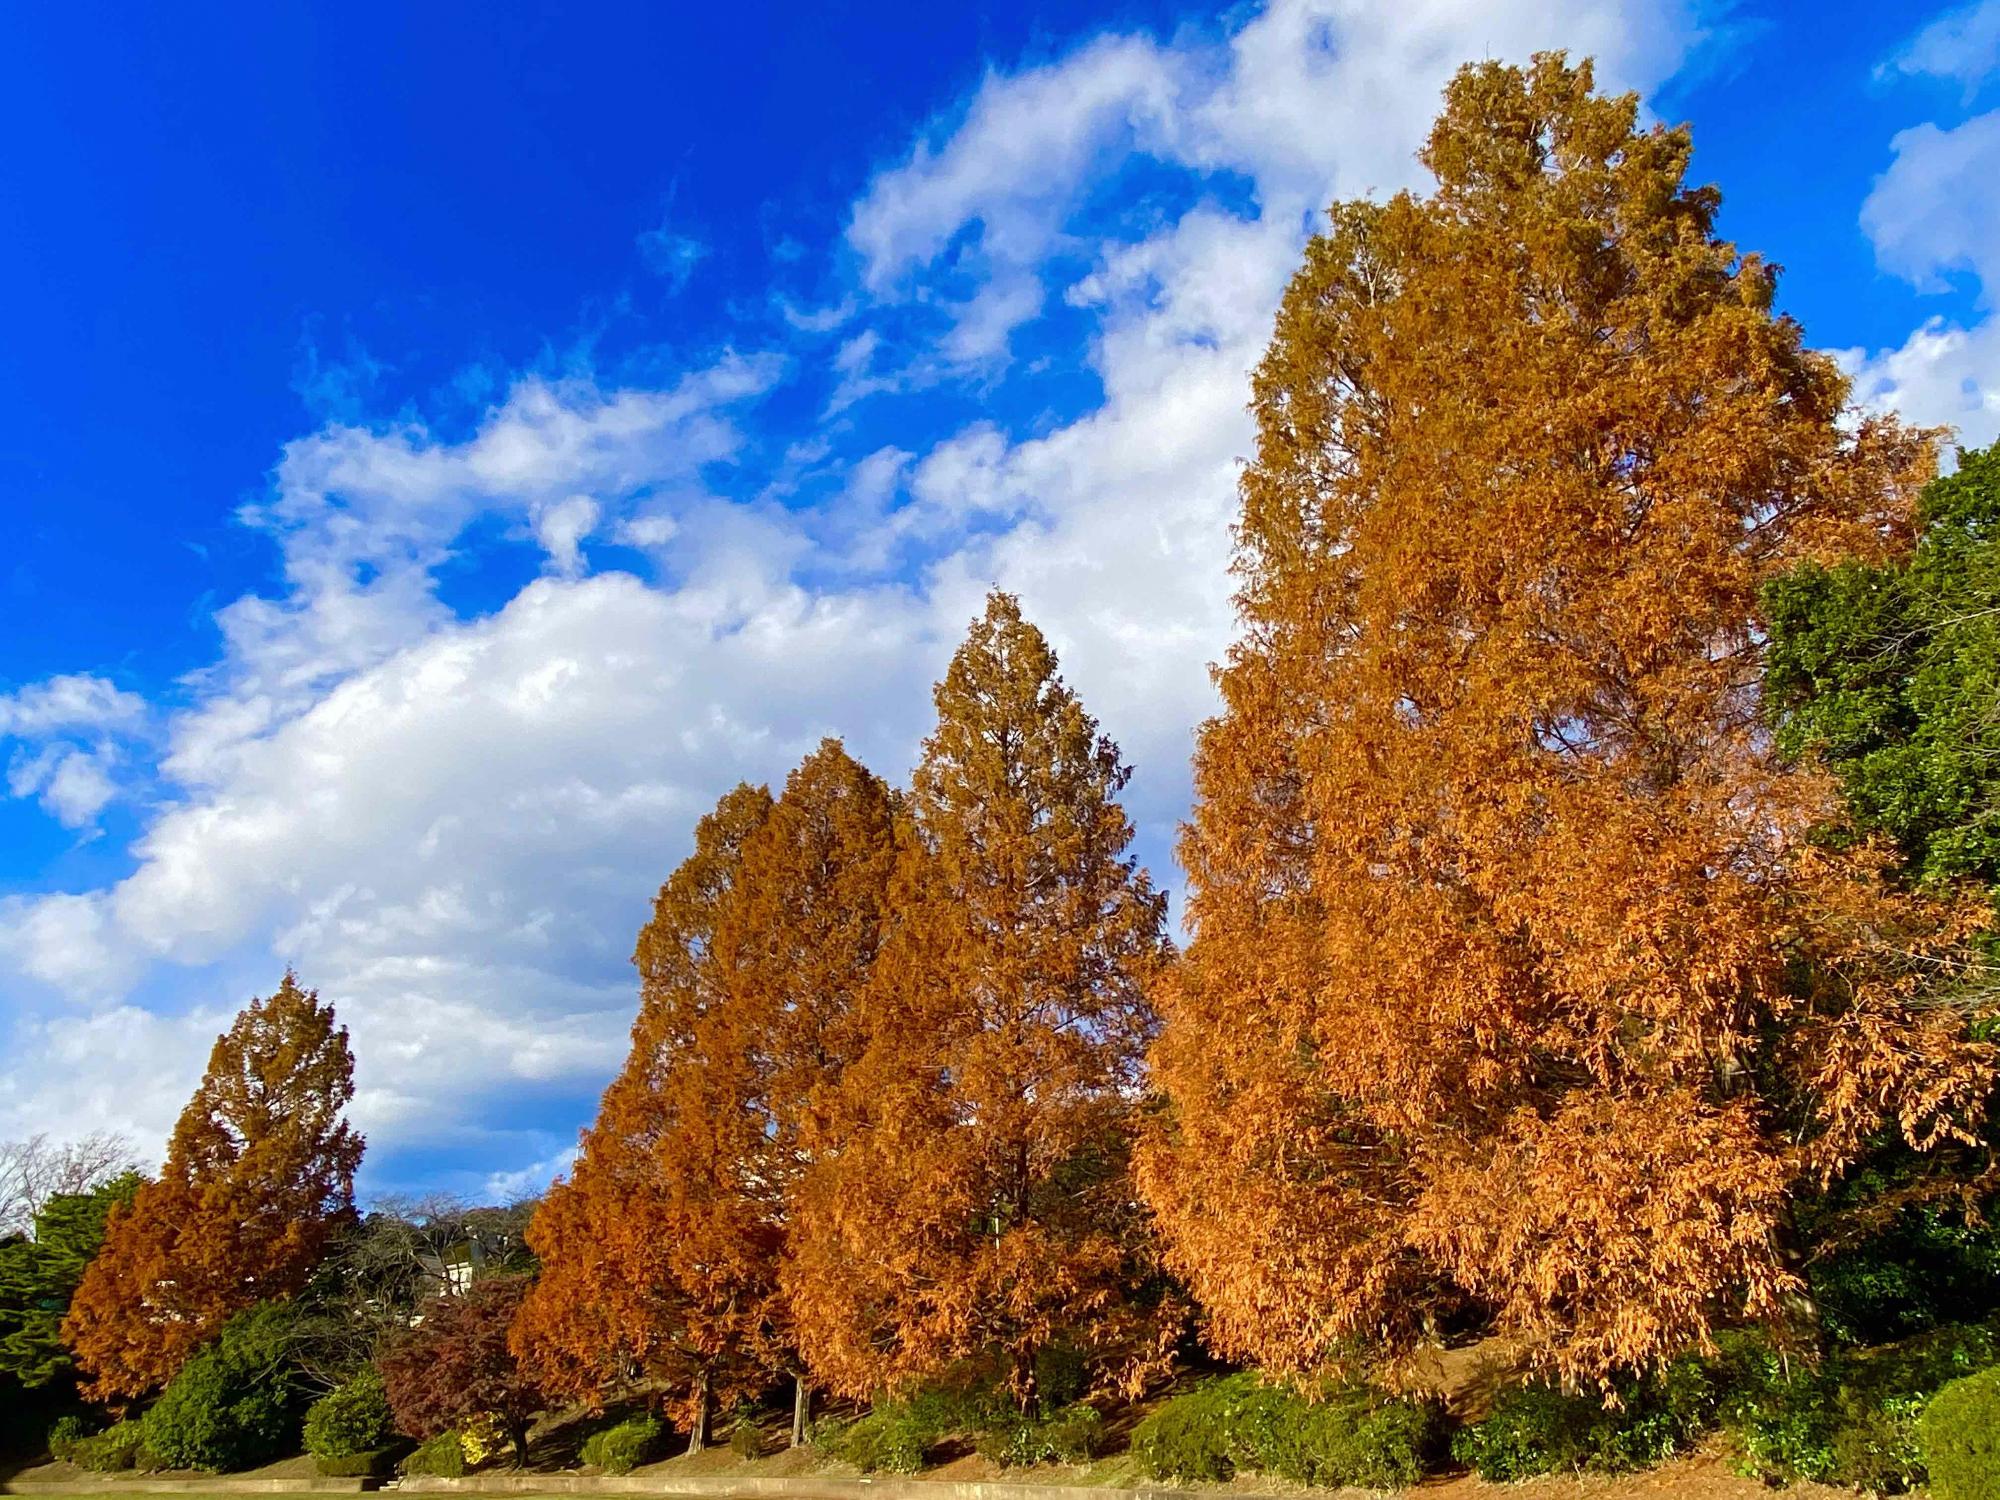 鳶尾中央公園で撮影された、青々とした空に届きそうな大きい紅葉した木々が立ち並ぶ風景